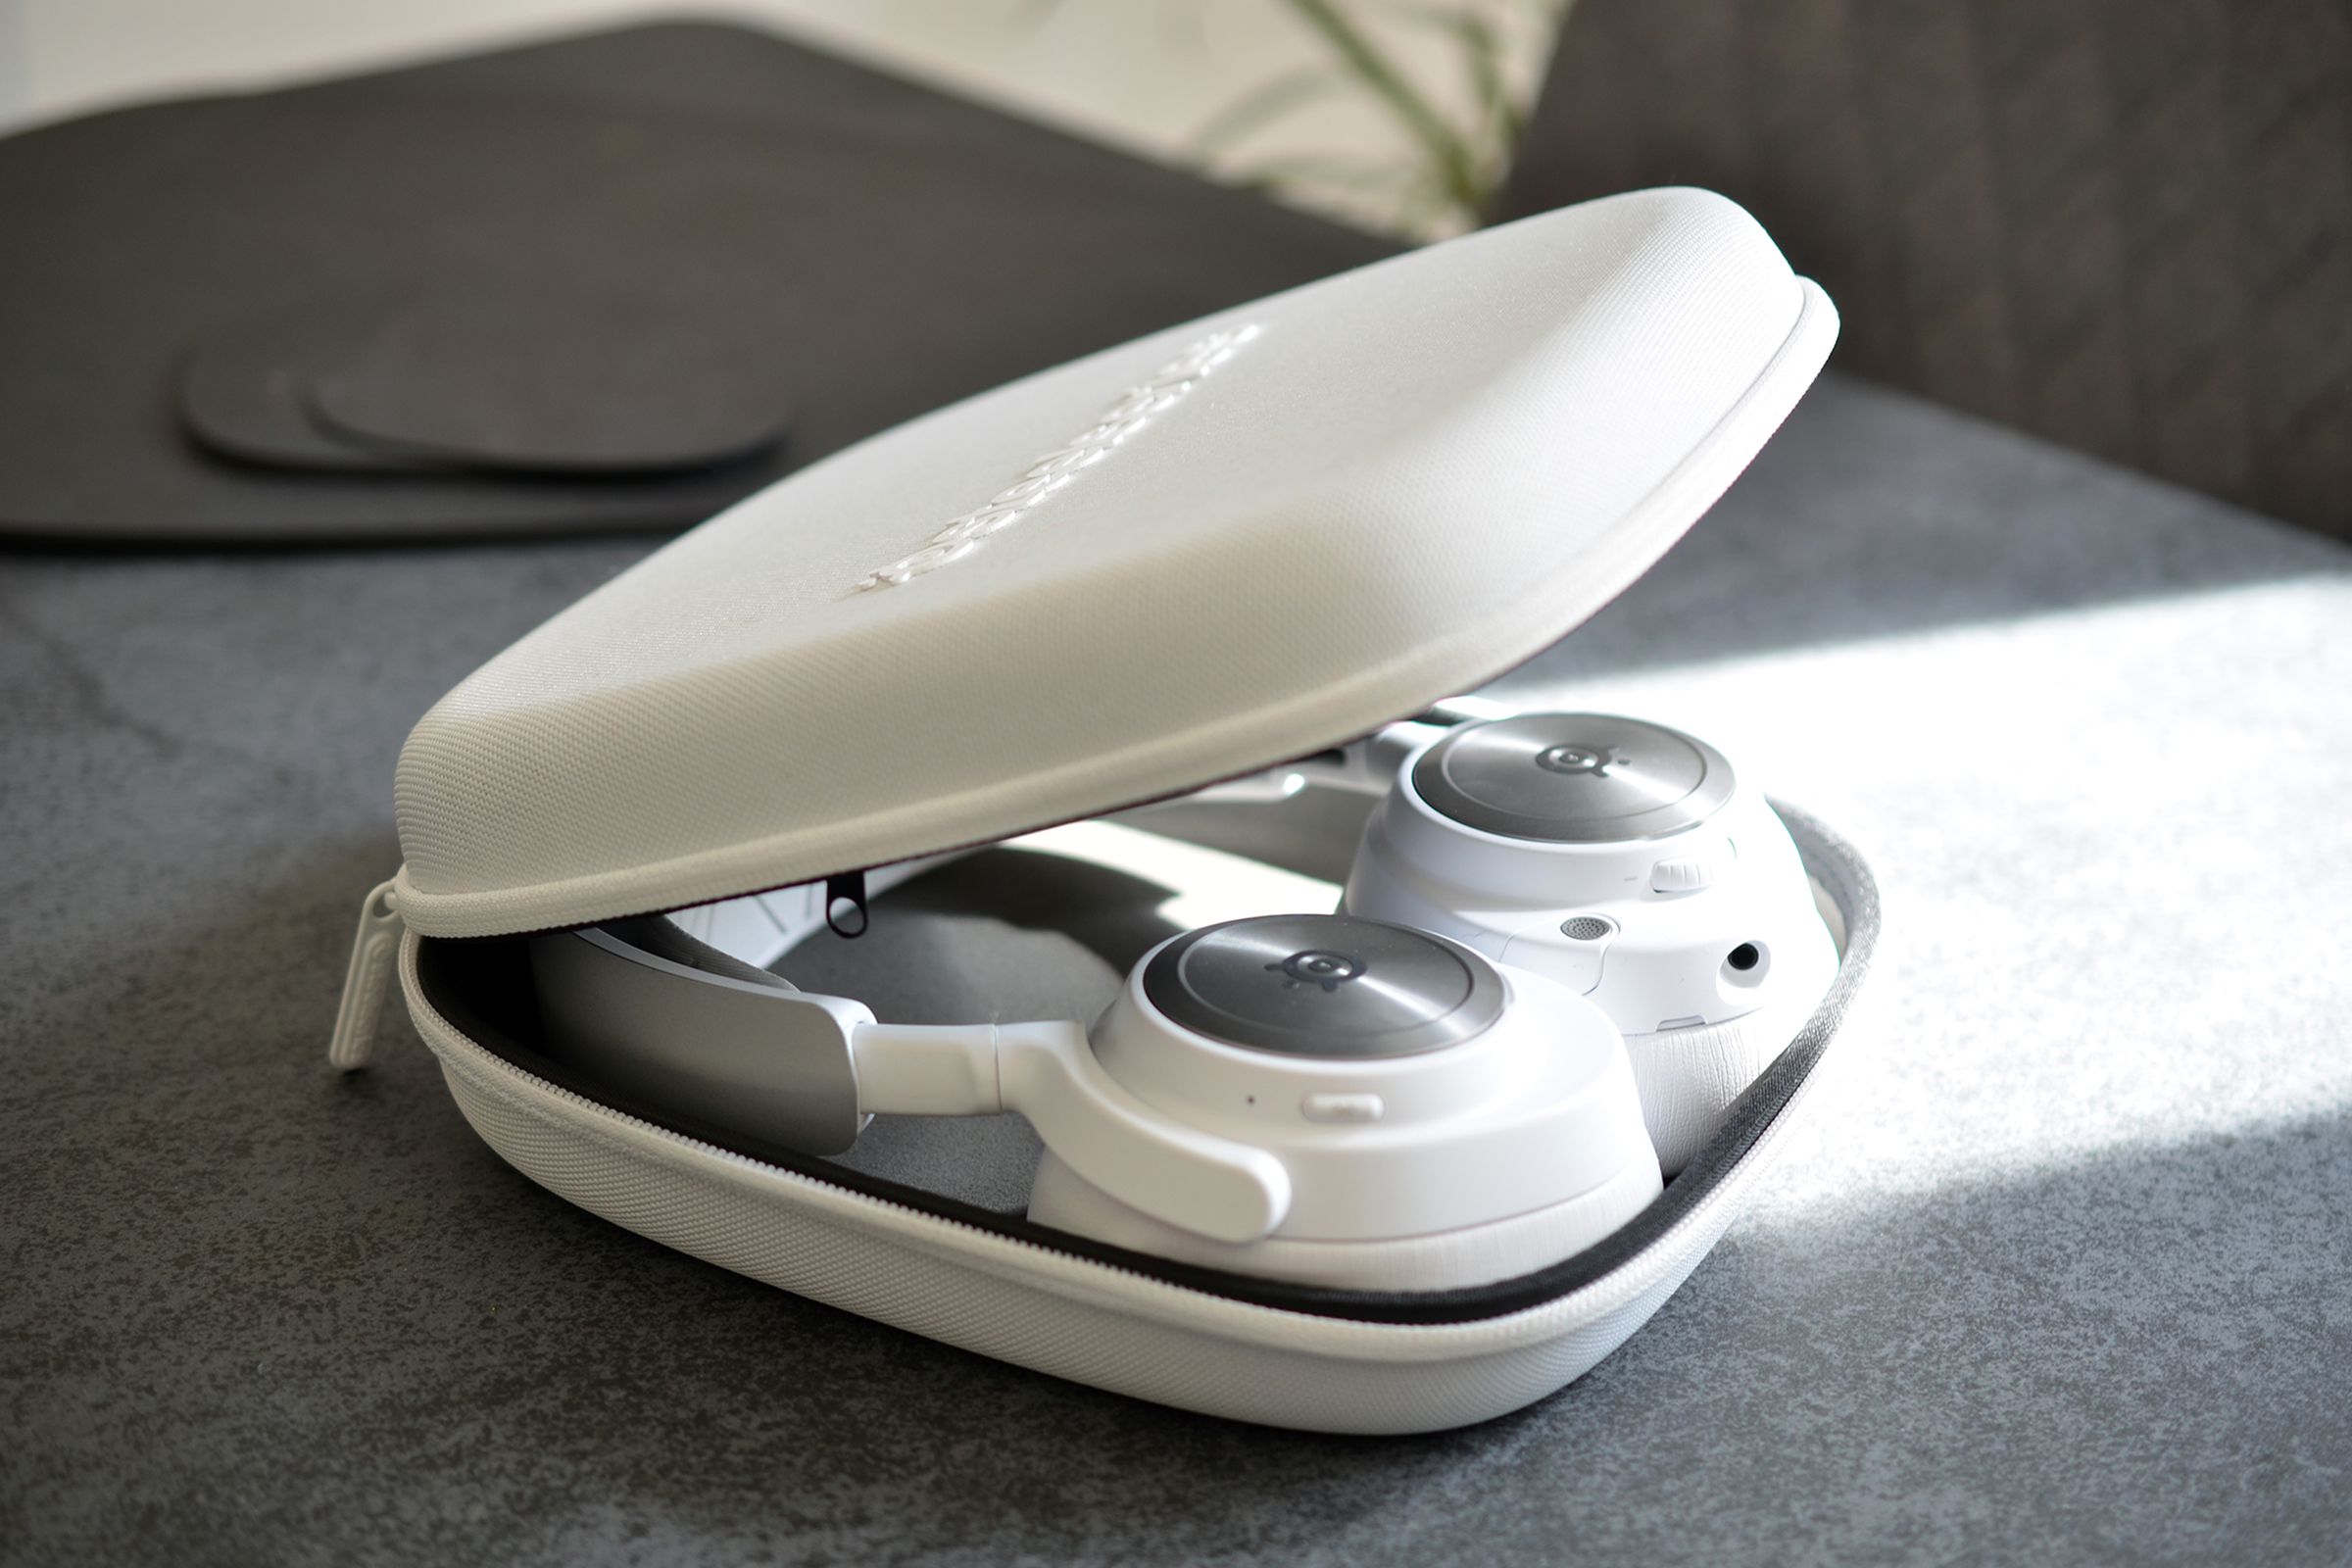 SteelSeries’ white Nova Pro headset